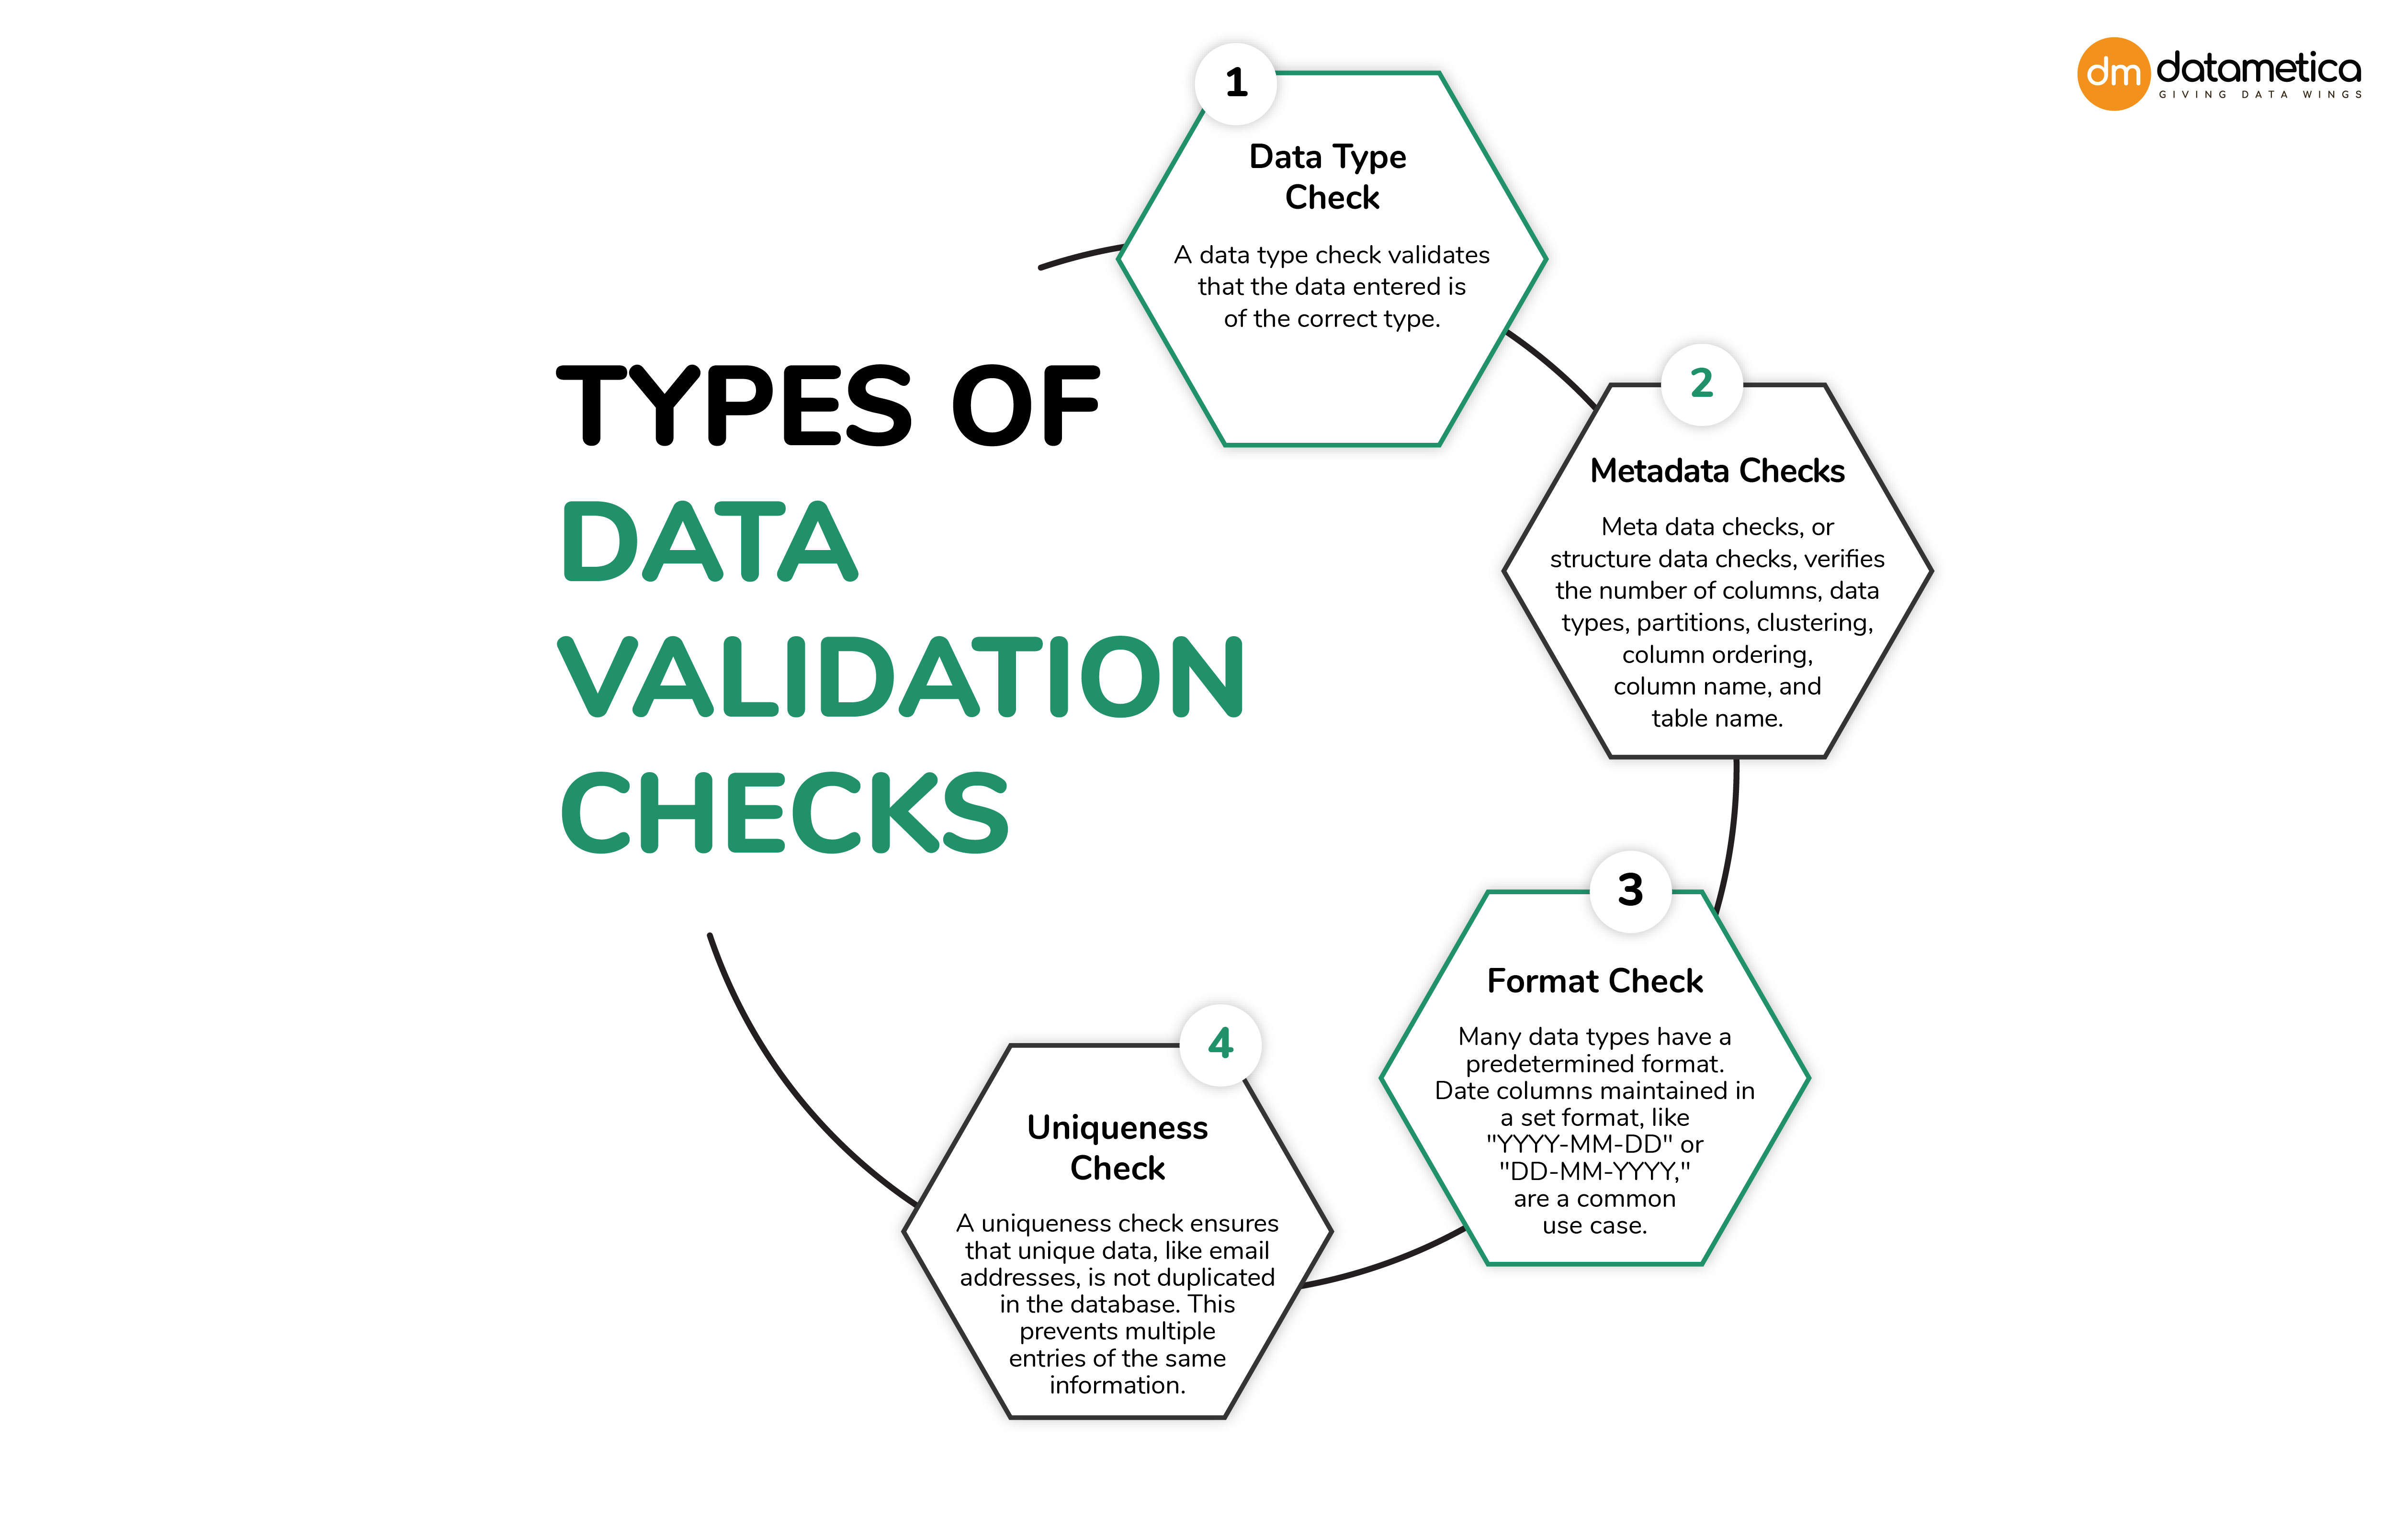 Types of Data Validation Checks